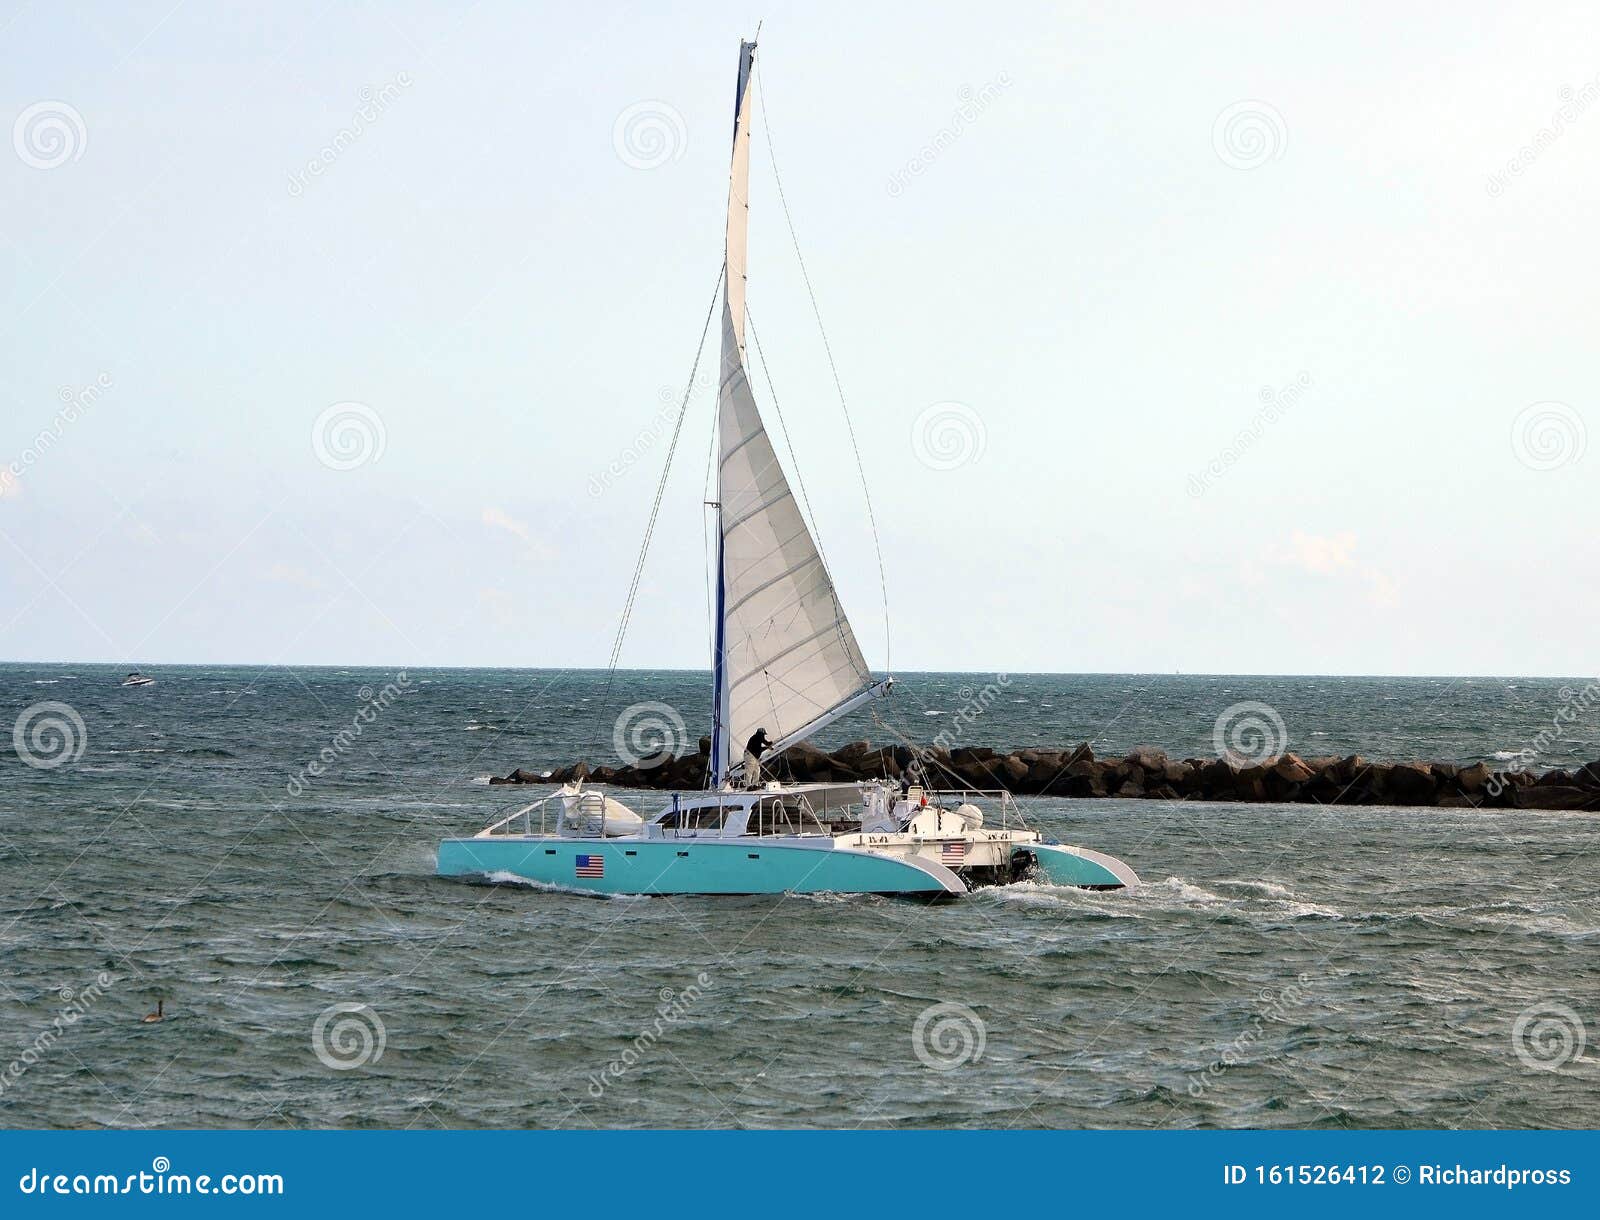 twin hulled sailboat